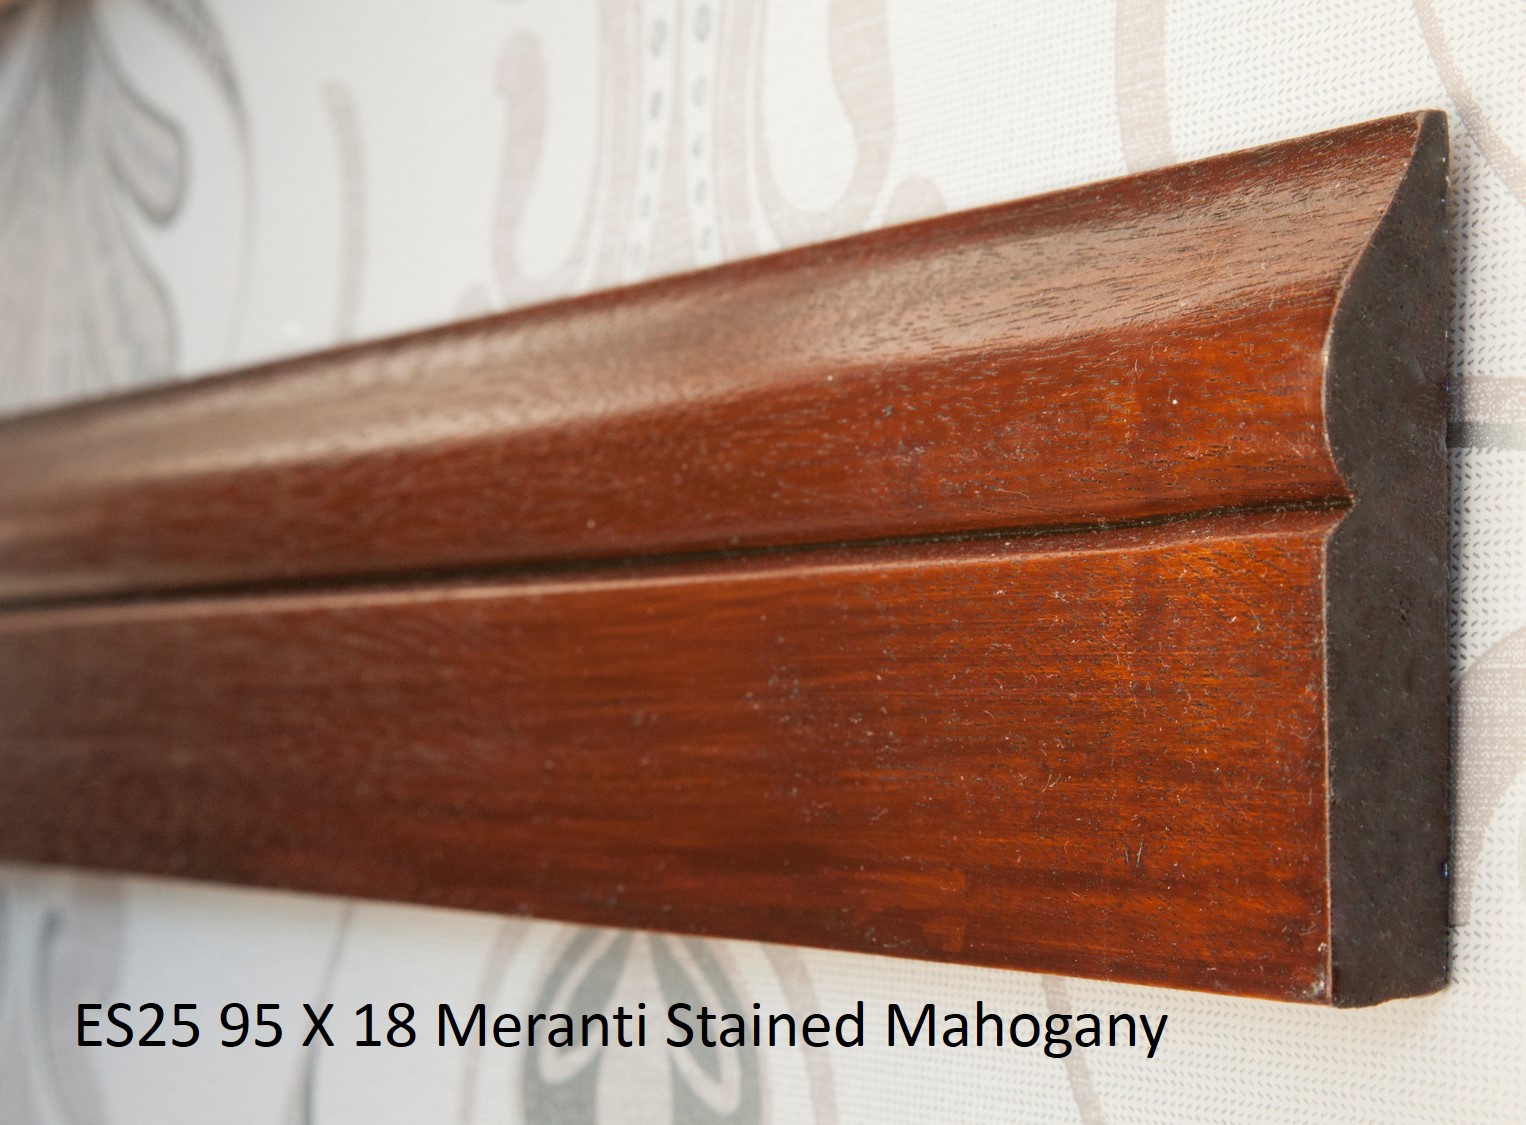 ES25 95 X 18 Meranti Stained Mahogany